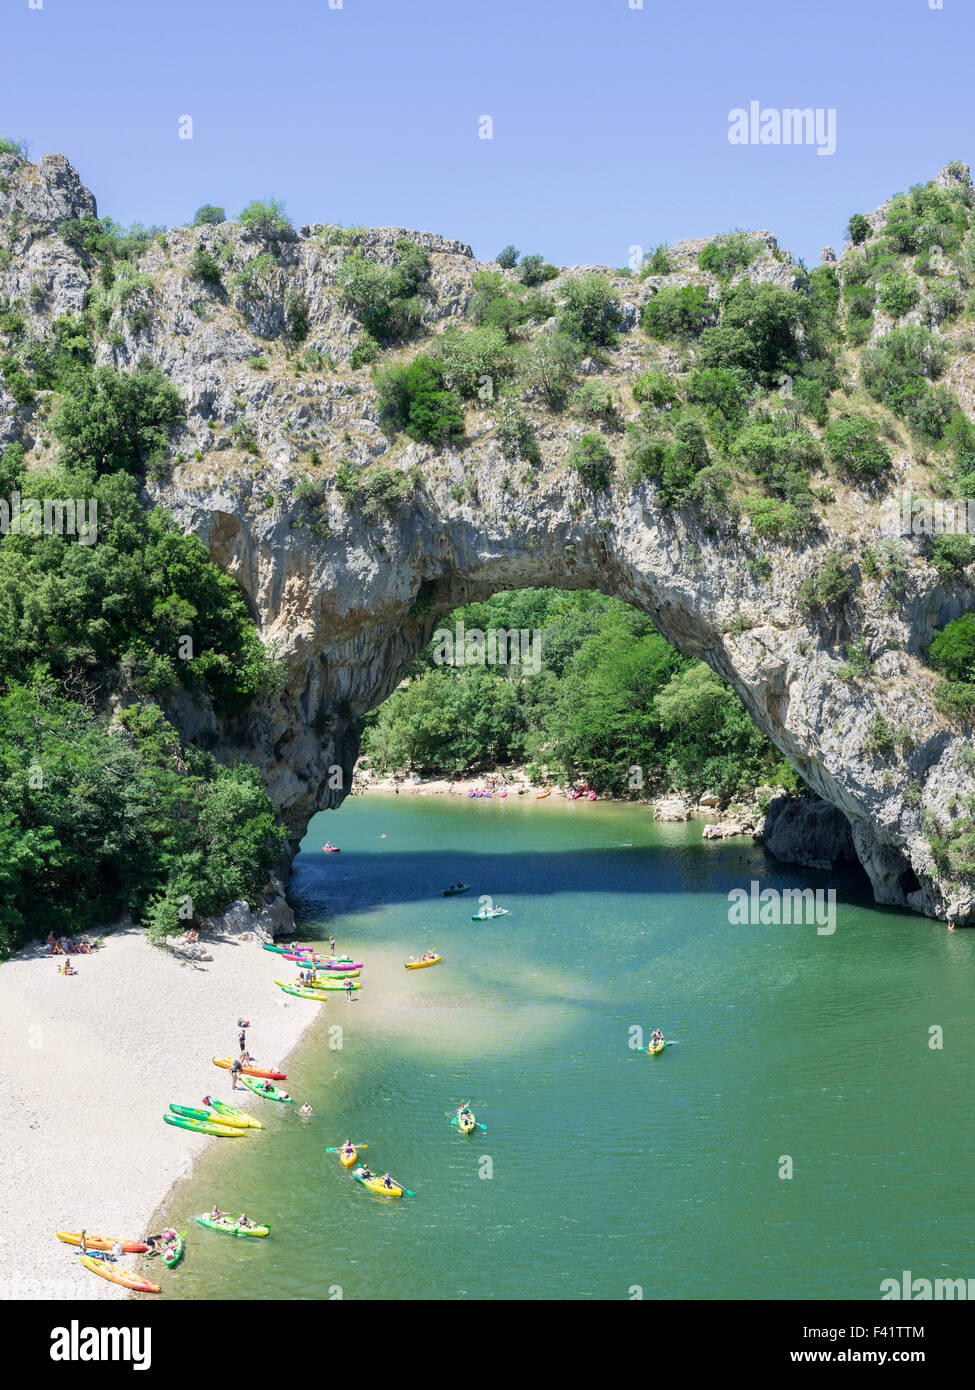 Pont d'Arc arche naturelle, de kayaks sur la rivière Ardèche, Vallon-Pont-d'Arc, Rhône-Alpes, France Banque D'Images